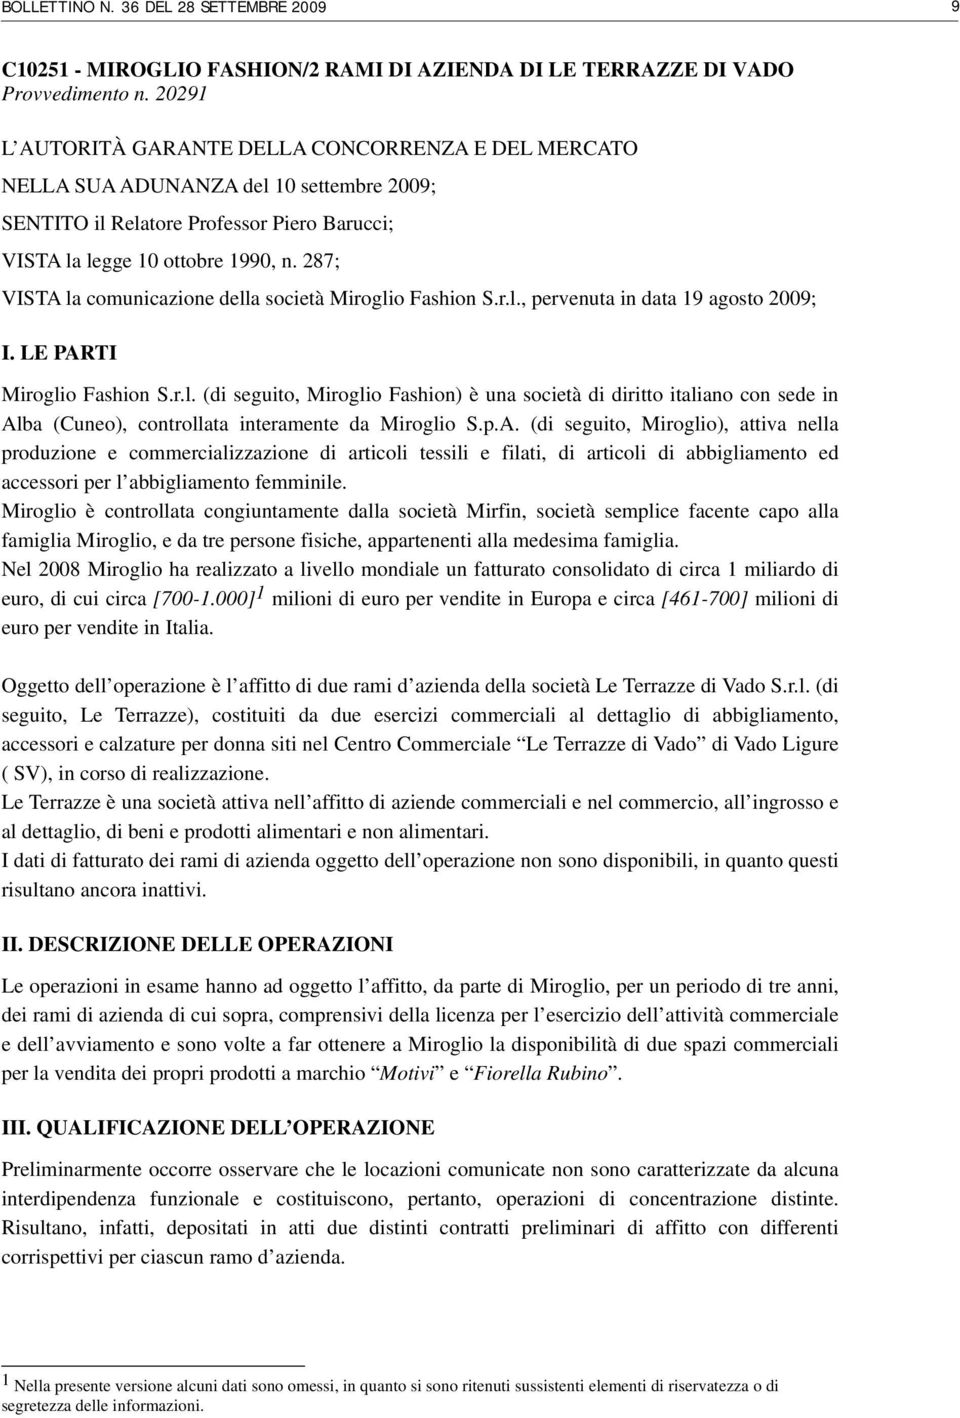 287; VISTA la comunicazione della società Miroglio Fashion S.r.l., pervenuta in data 19 agosto 2009; I. LE PARTI Miroglio Fashion S.r.l. (di seguito, Miroglio Fashion) è una società di diritto italiano con sede in Alba (Cuneo), controllata interamente da Miroglio S.